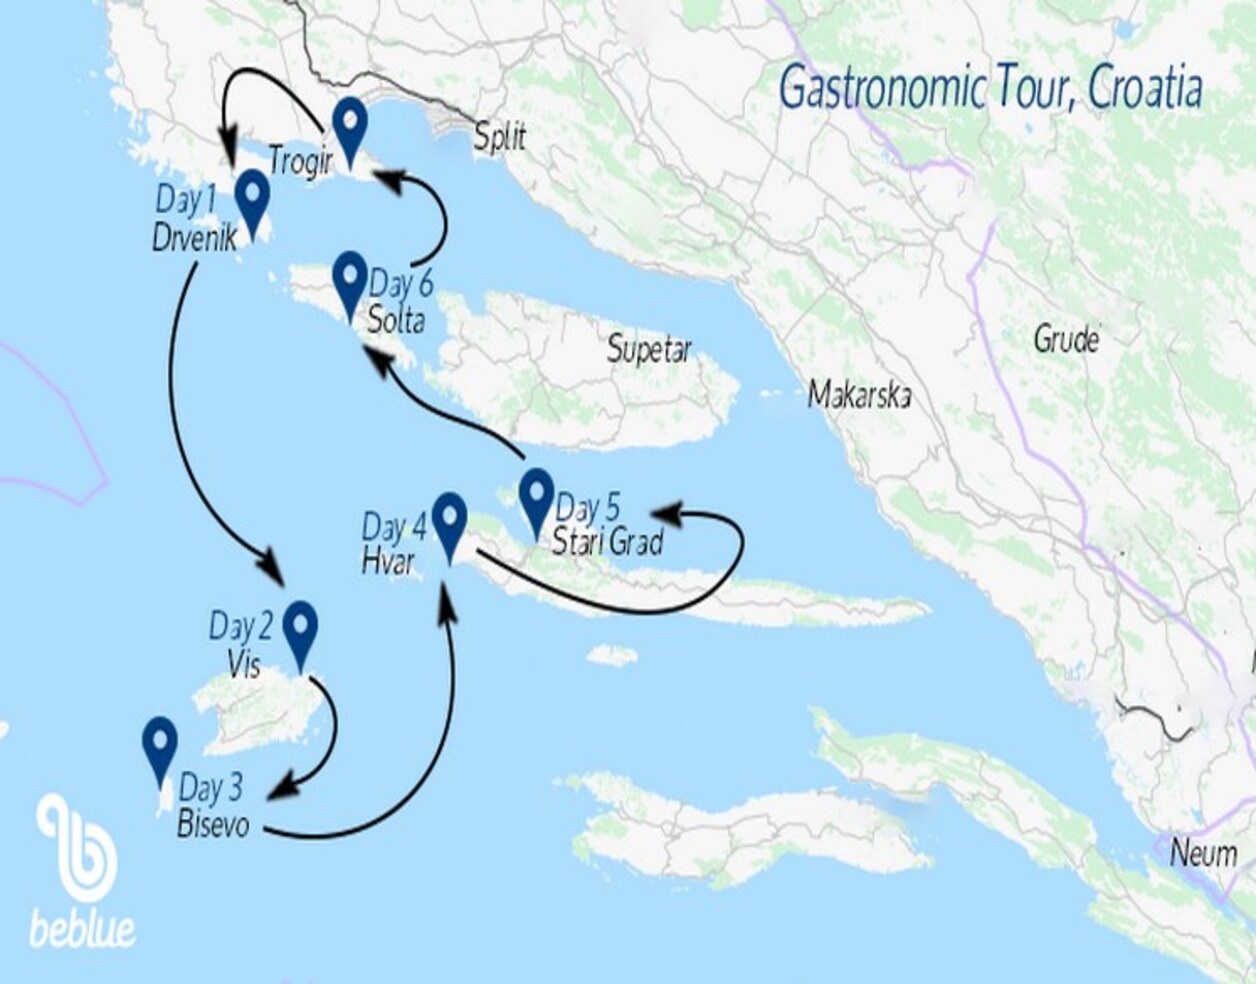 Rotta enogastronomica: Spalato e la Croazia - ID 419